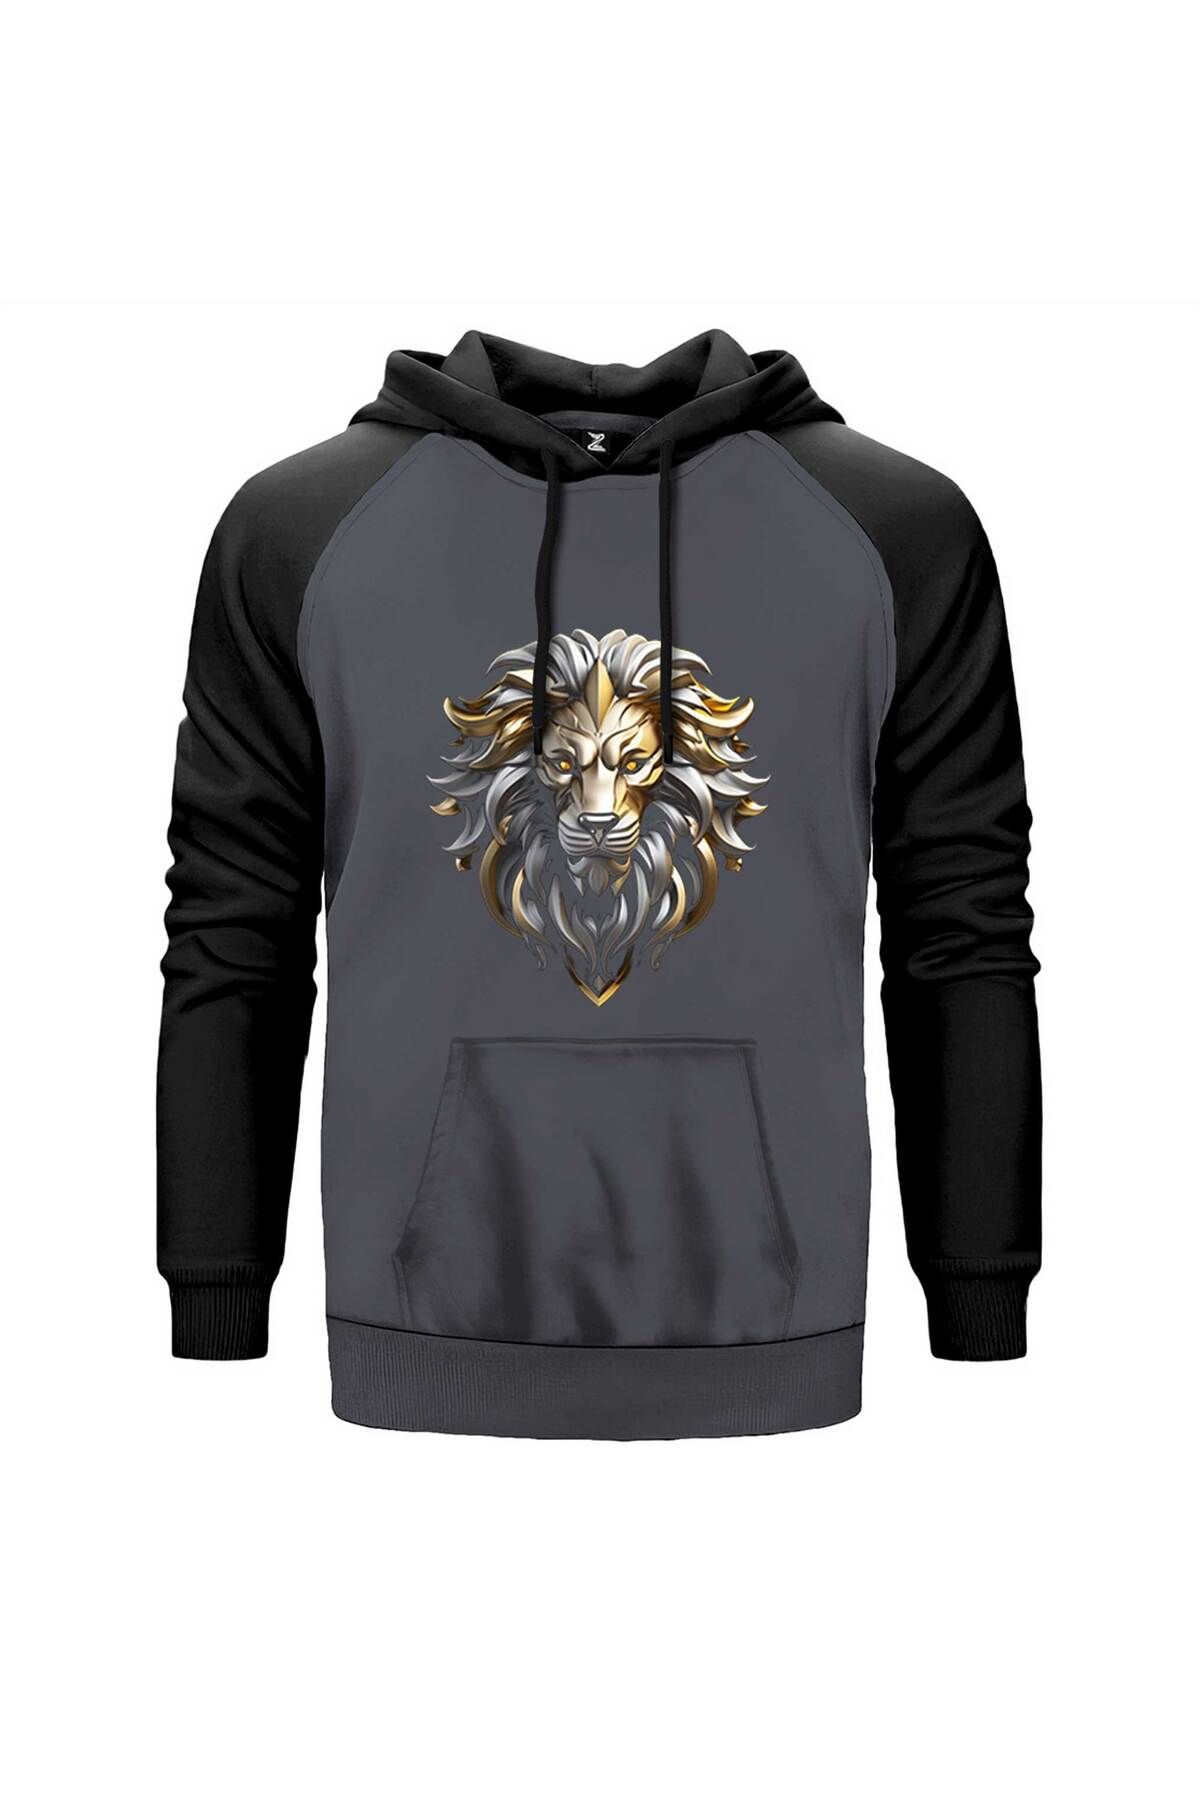 Z zepplin Silver and Gold Lion Gri Renk Reglan Kol Sweatshirt